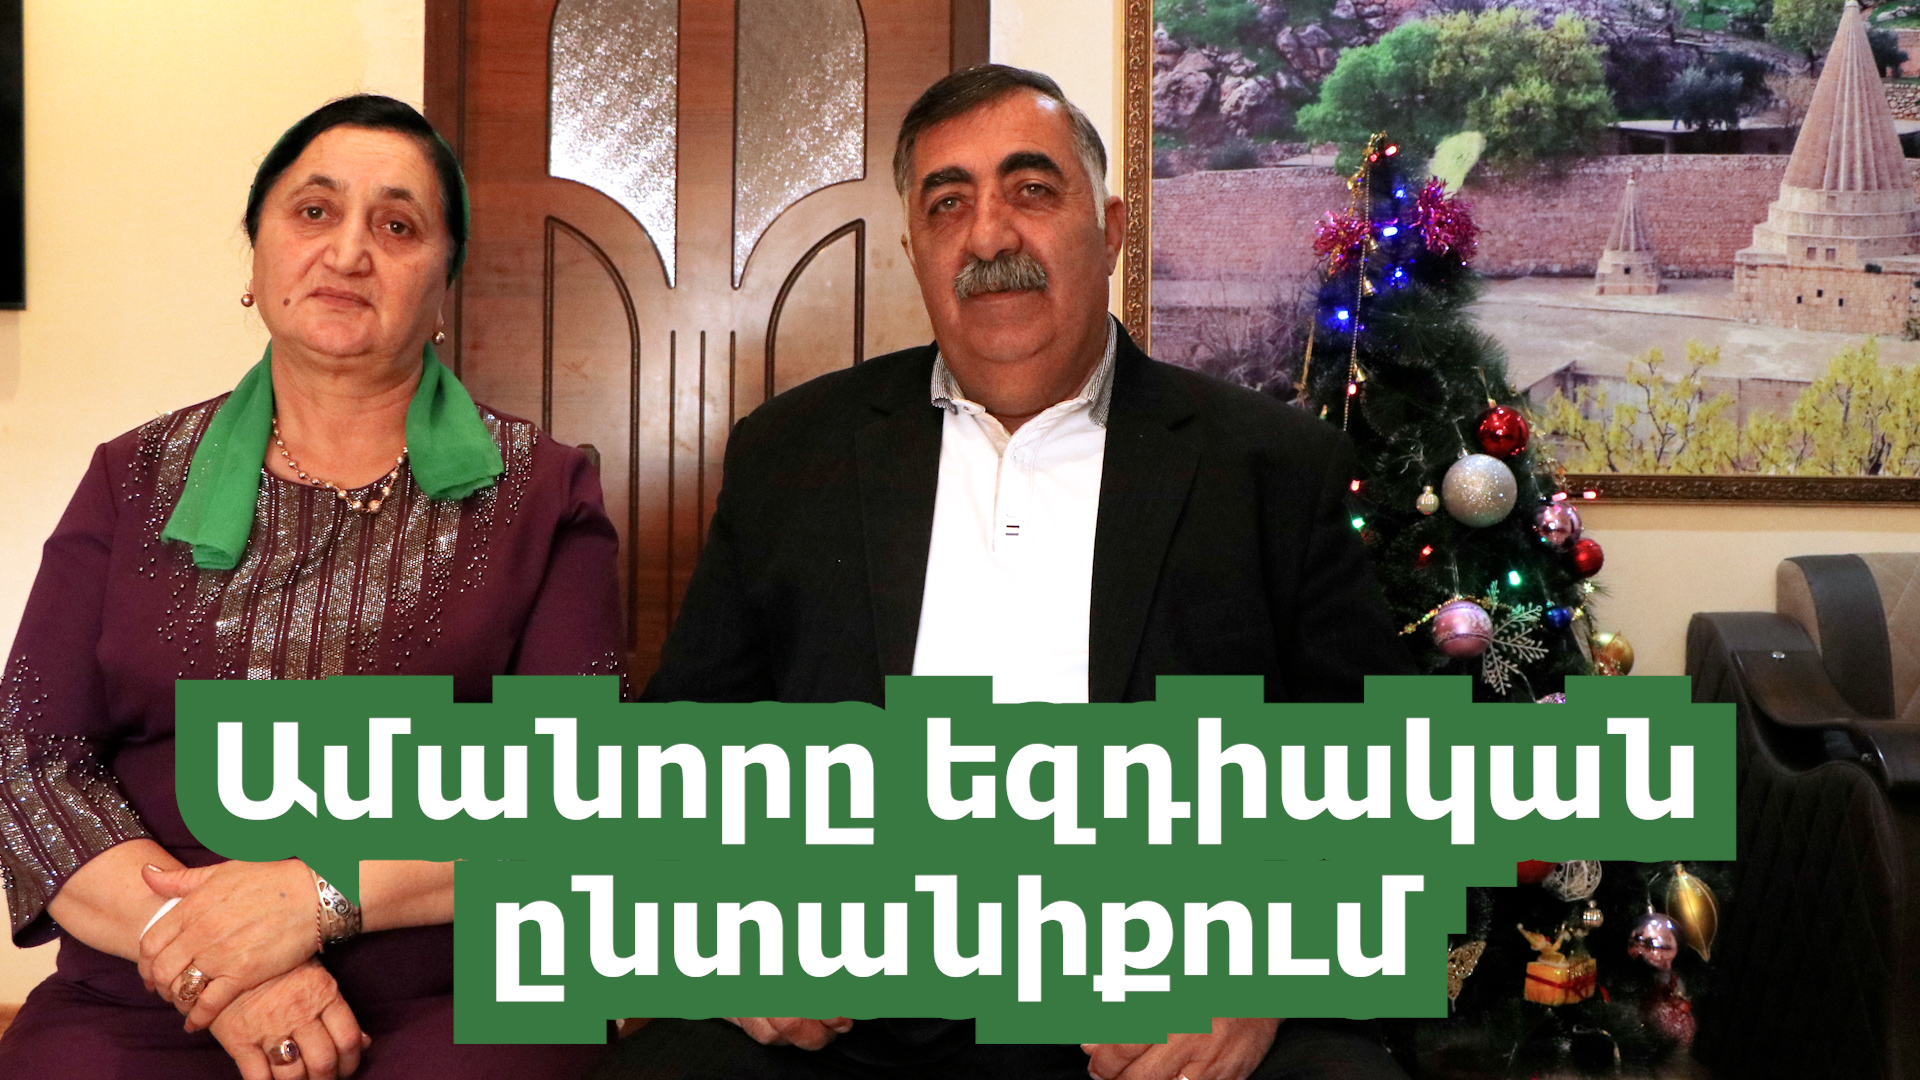 Ինչպես են Հայաստանի եզդիները նշում Նոր տարին